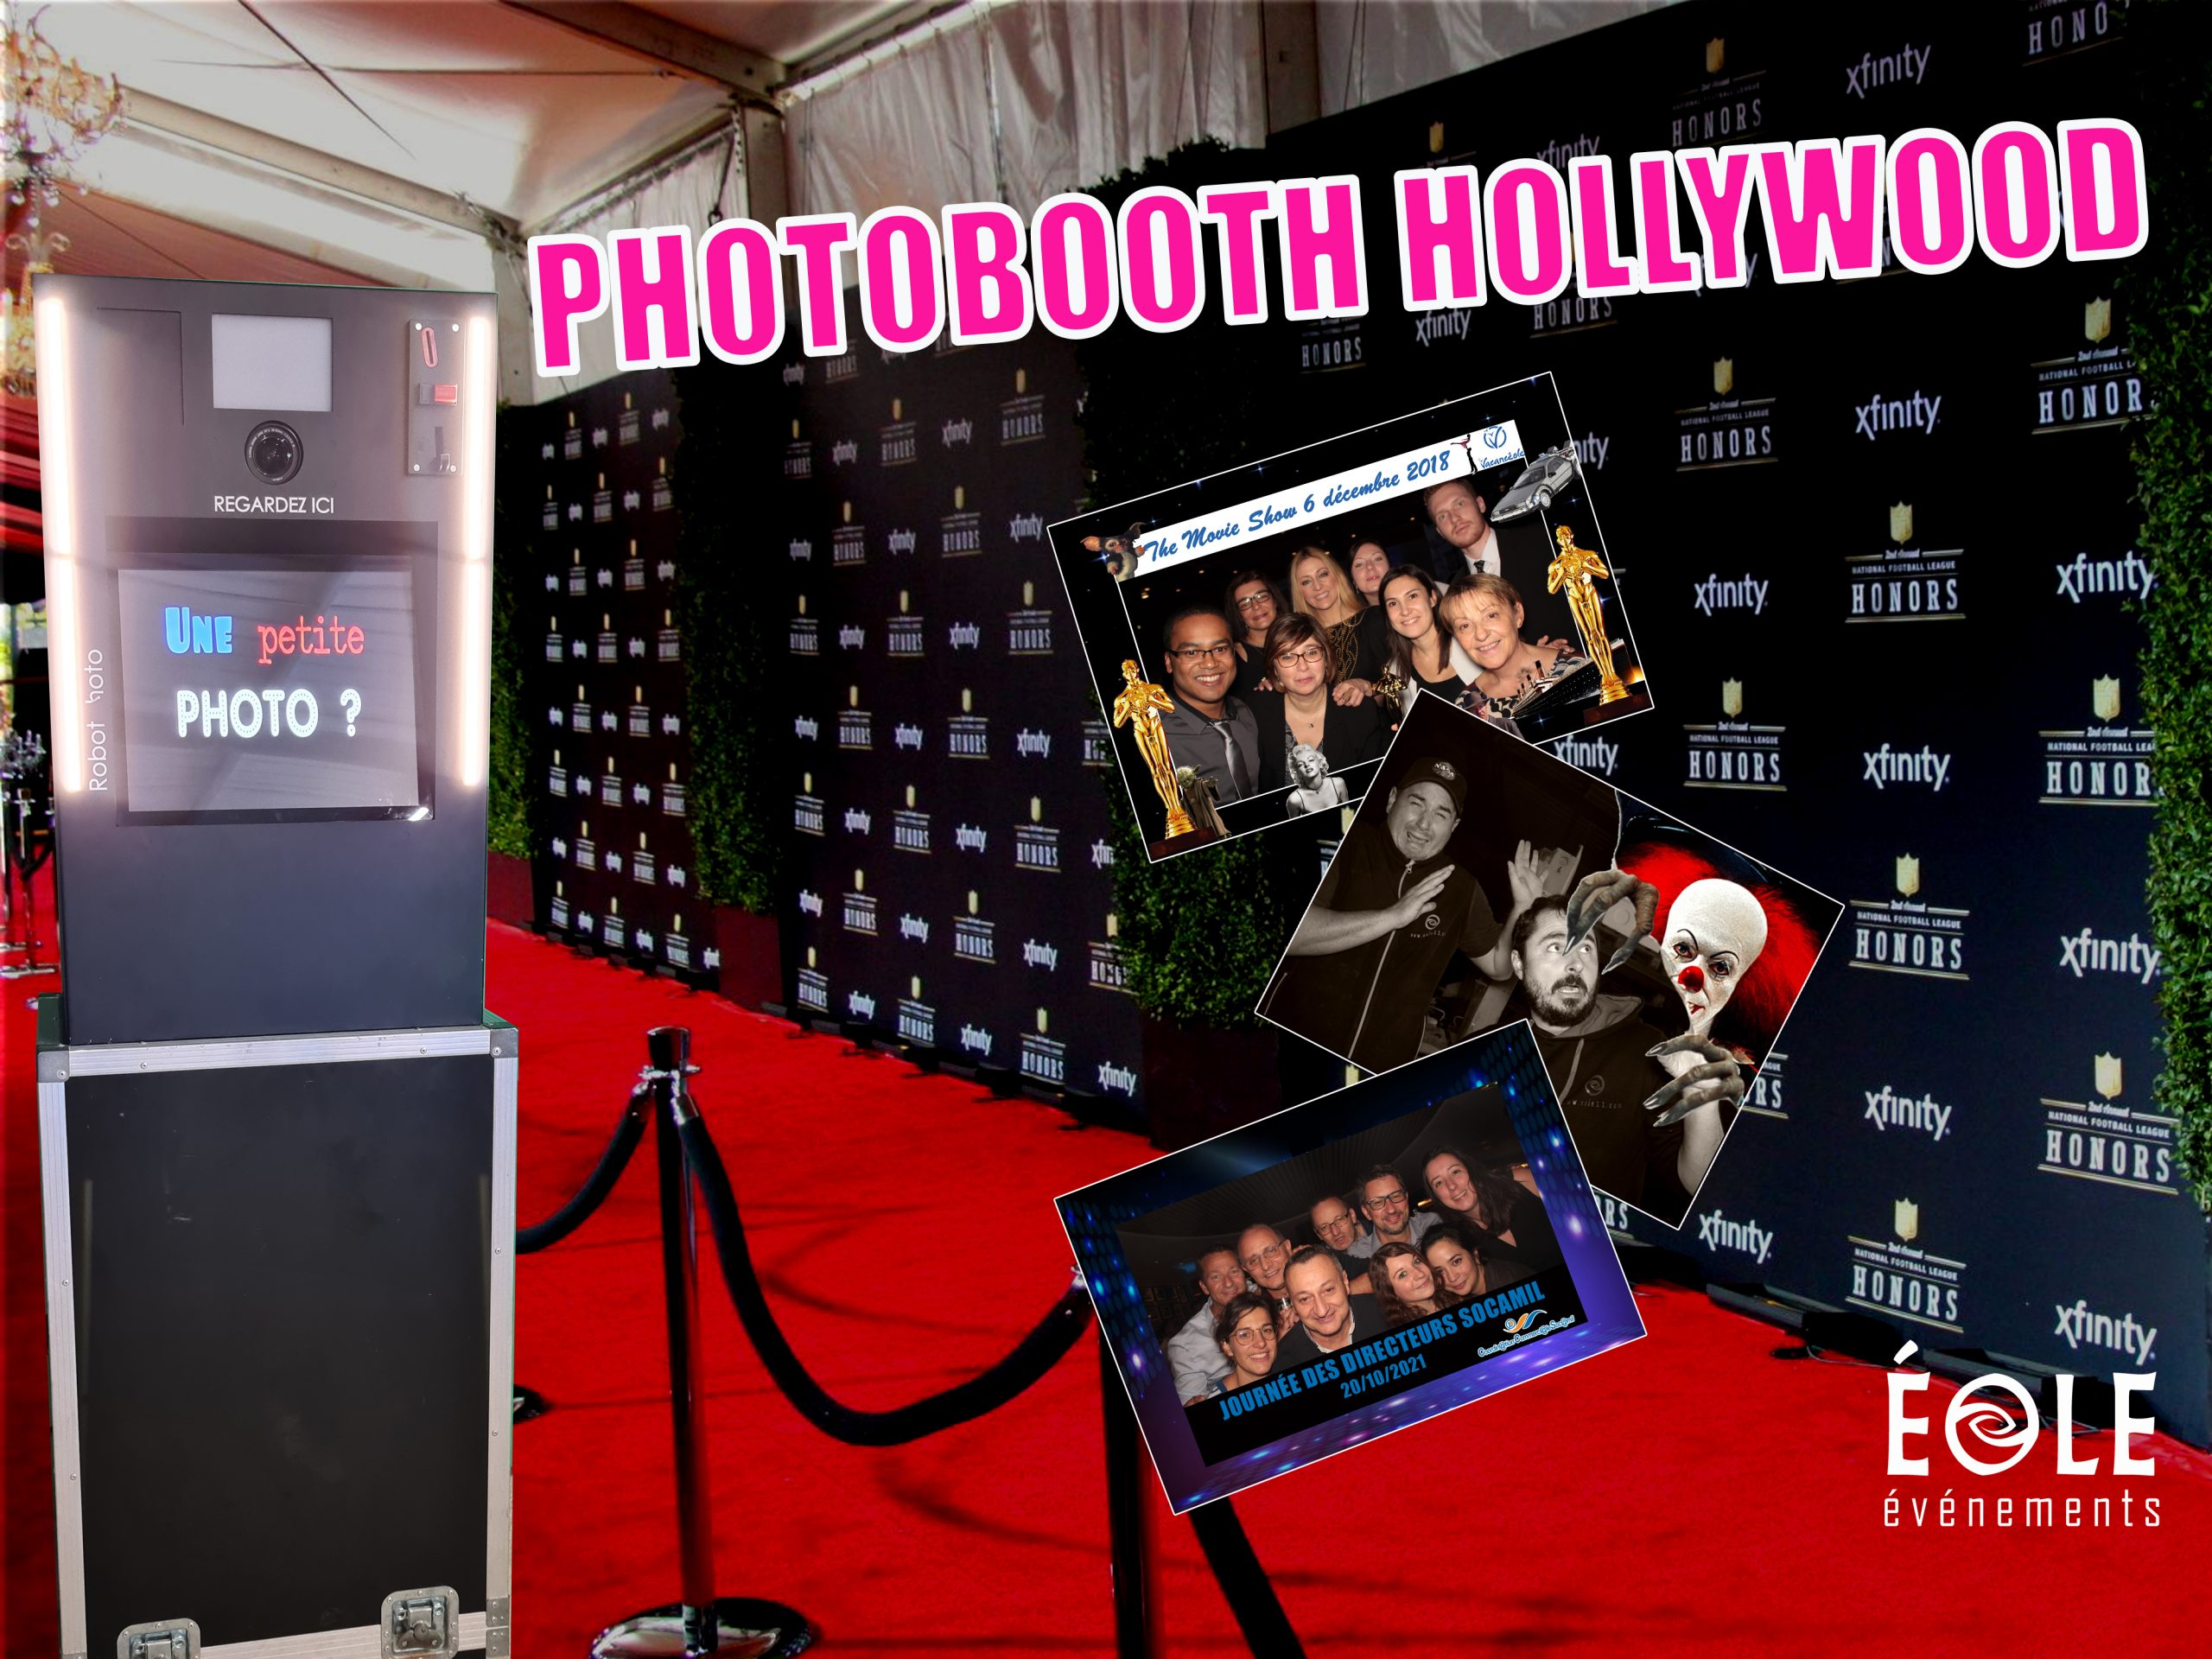 un photobooth "hollywood" avec des photos aux cadres personnalisés à droite